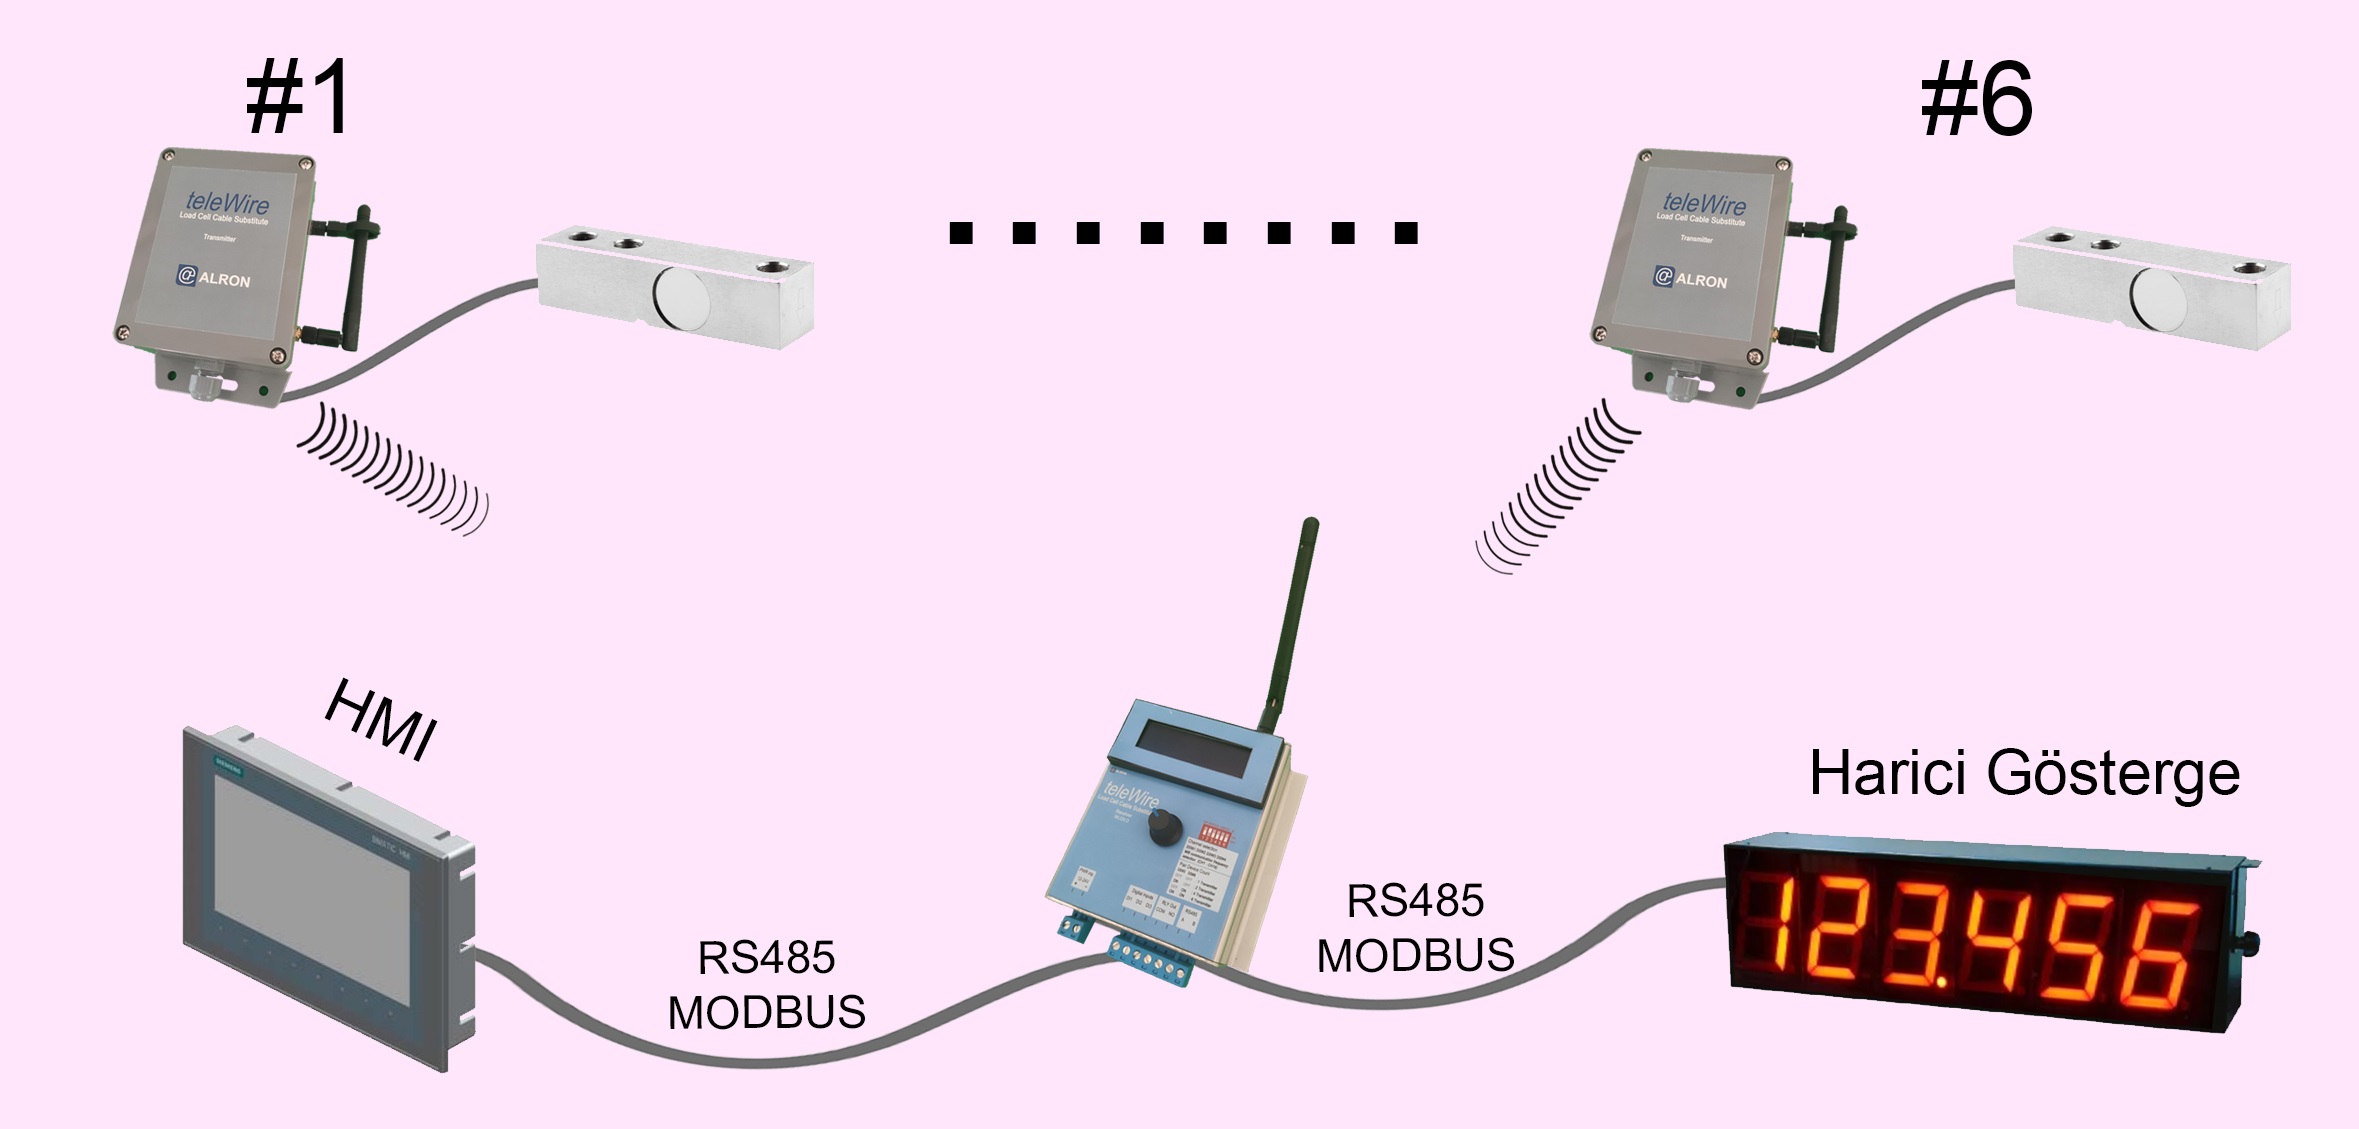 Receiver üzerinden RS485 - Modbus bağlantısıyla ister harici göstergeye ister HMI çıkış verebilirsiniz.